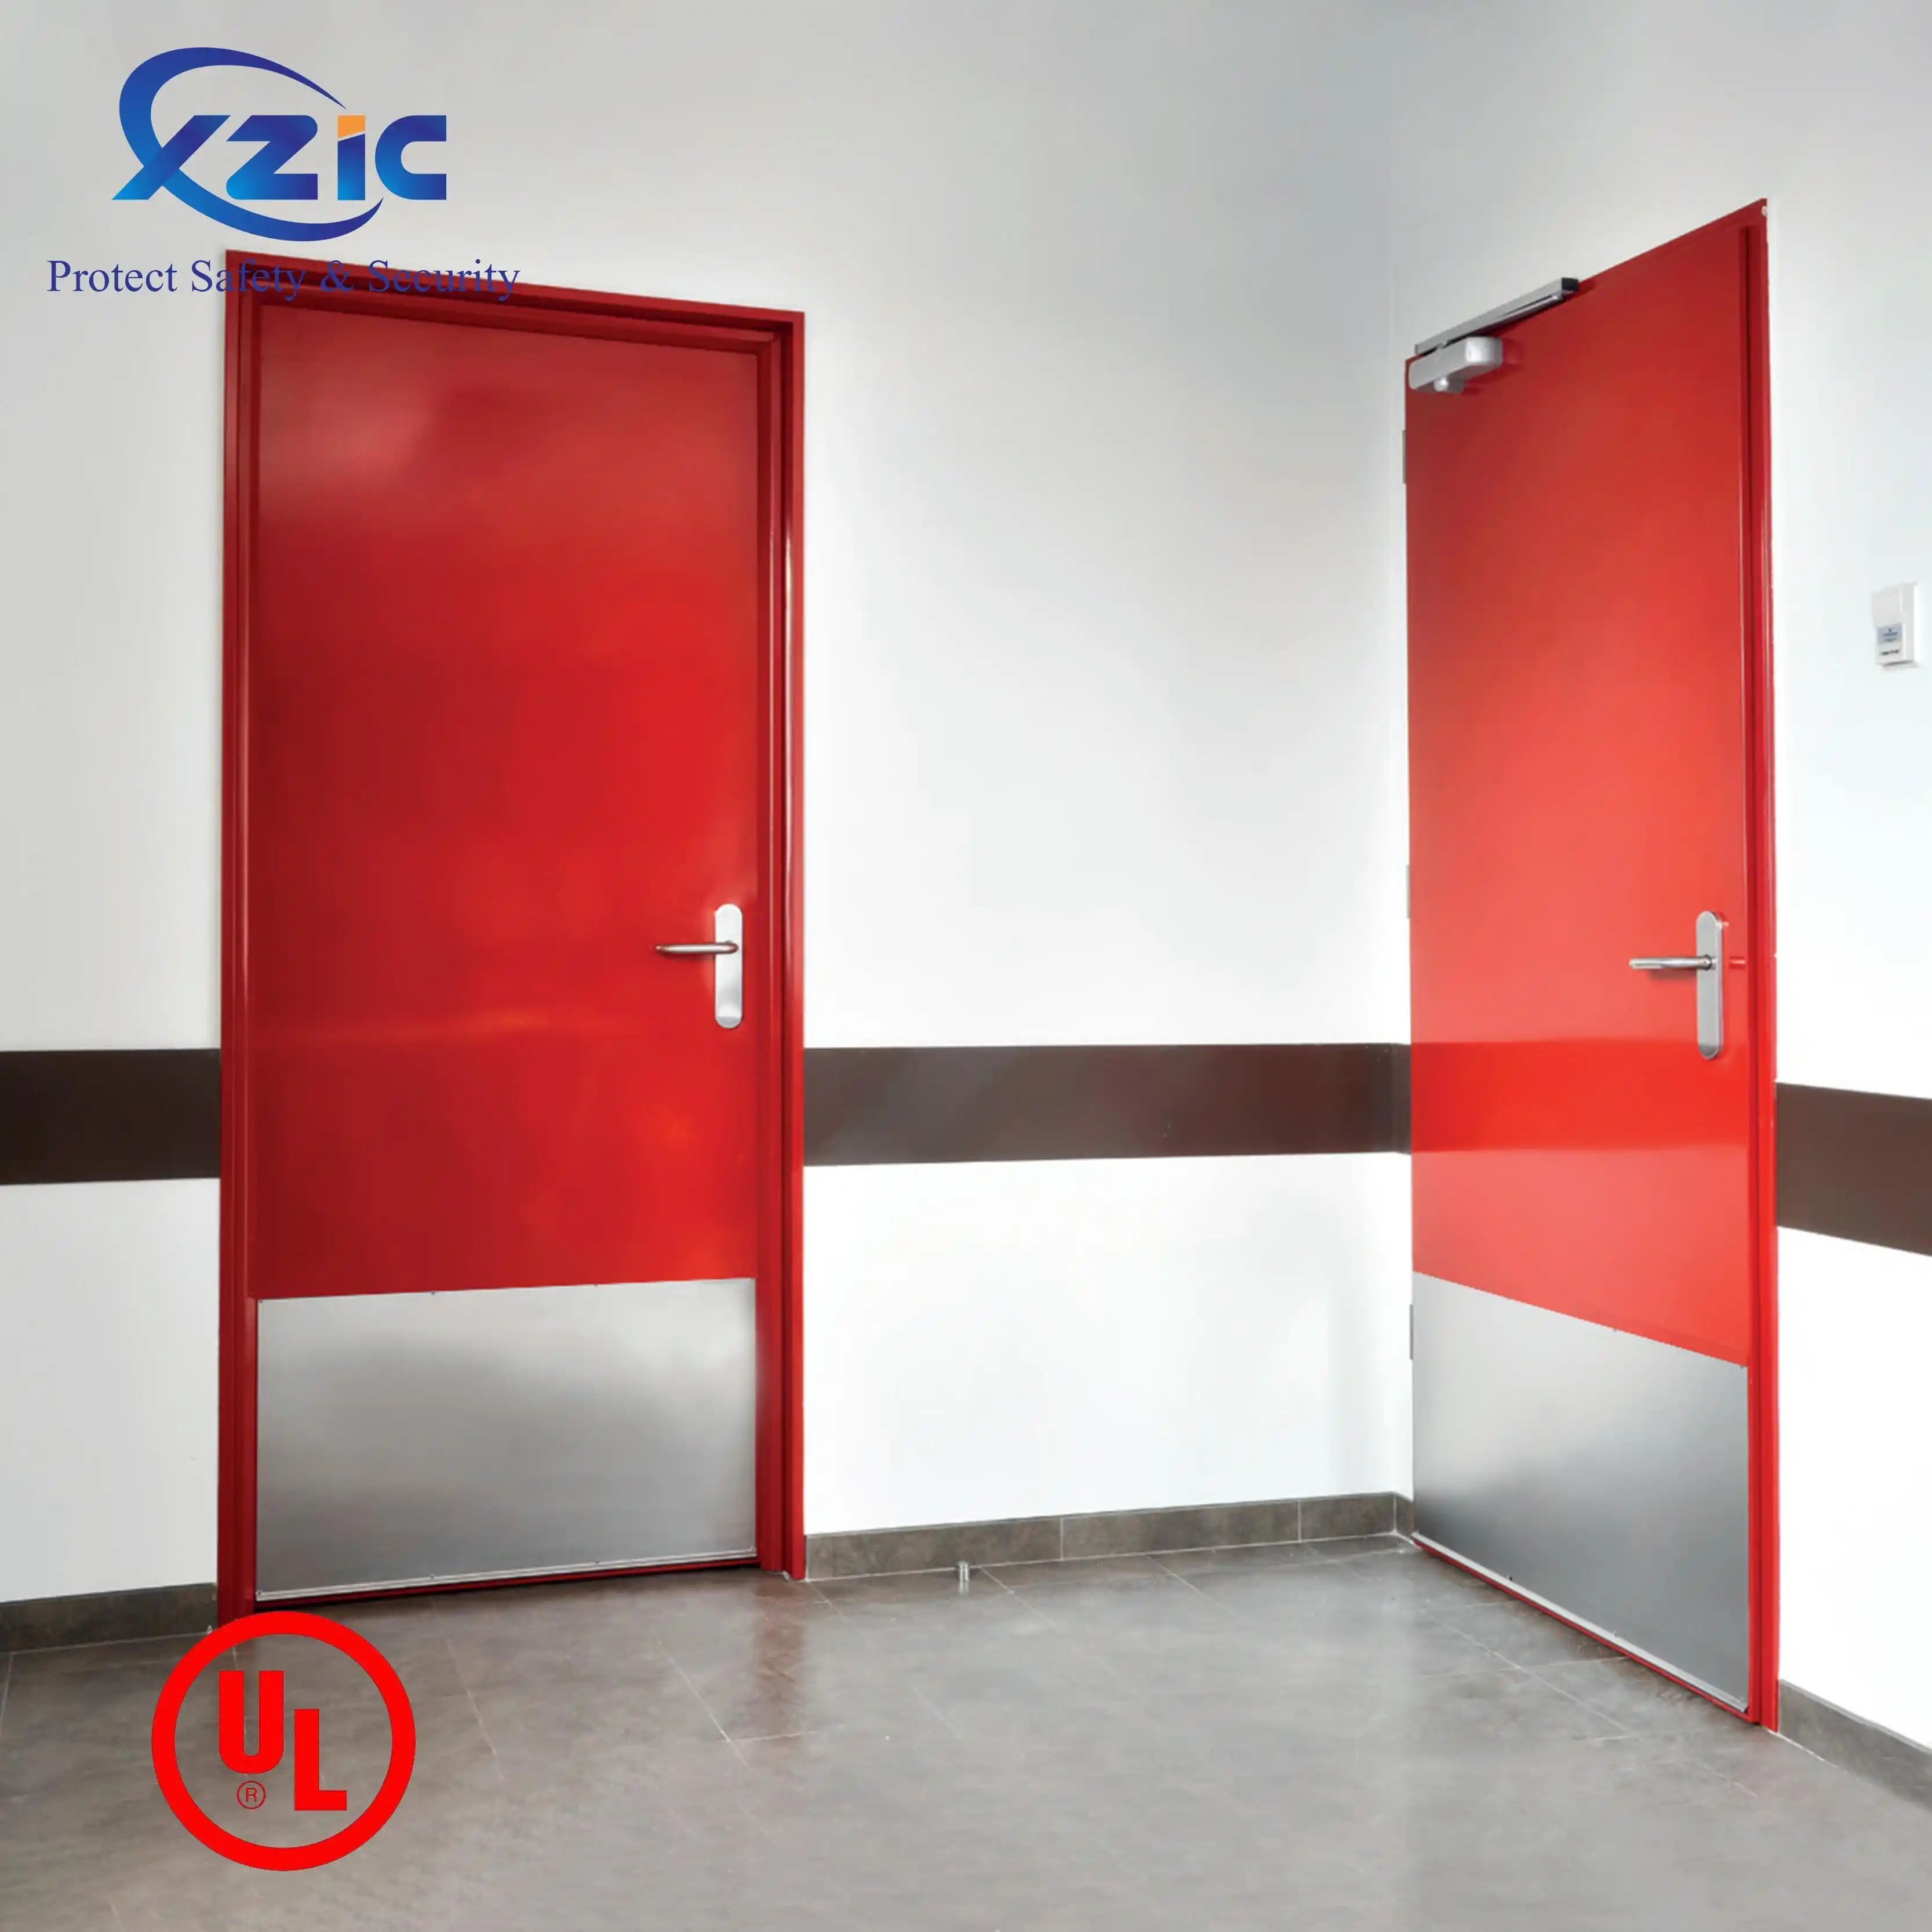 Enter fire resistant doors for UL 2 hours fire rated steel door